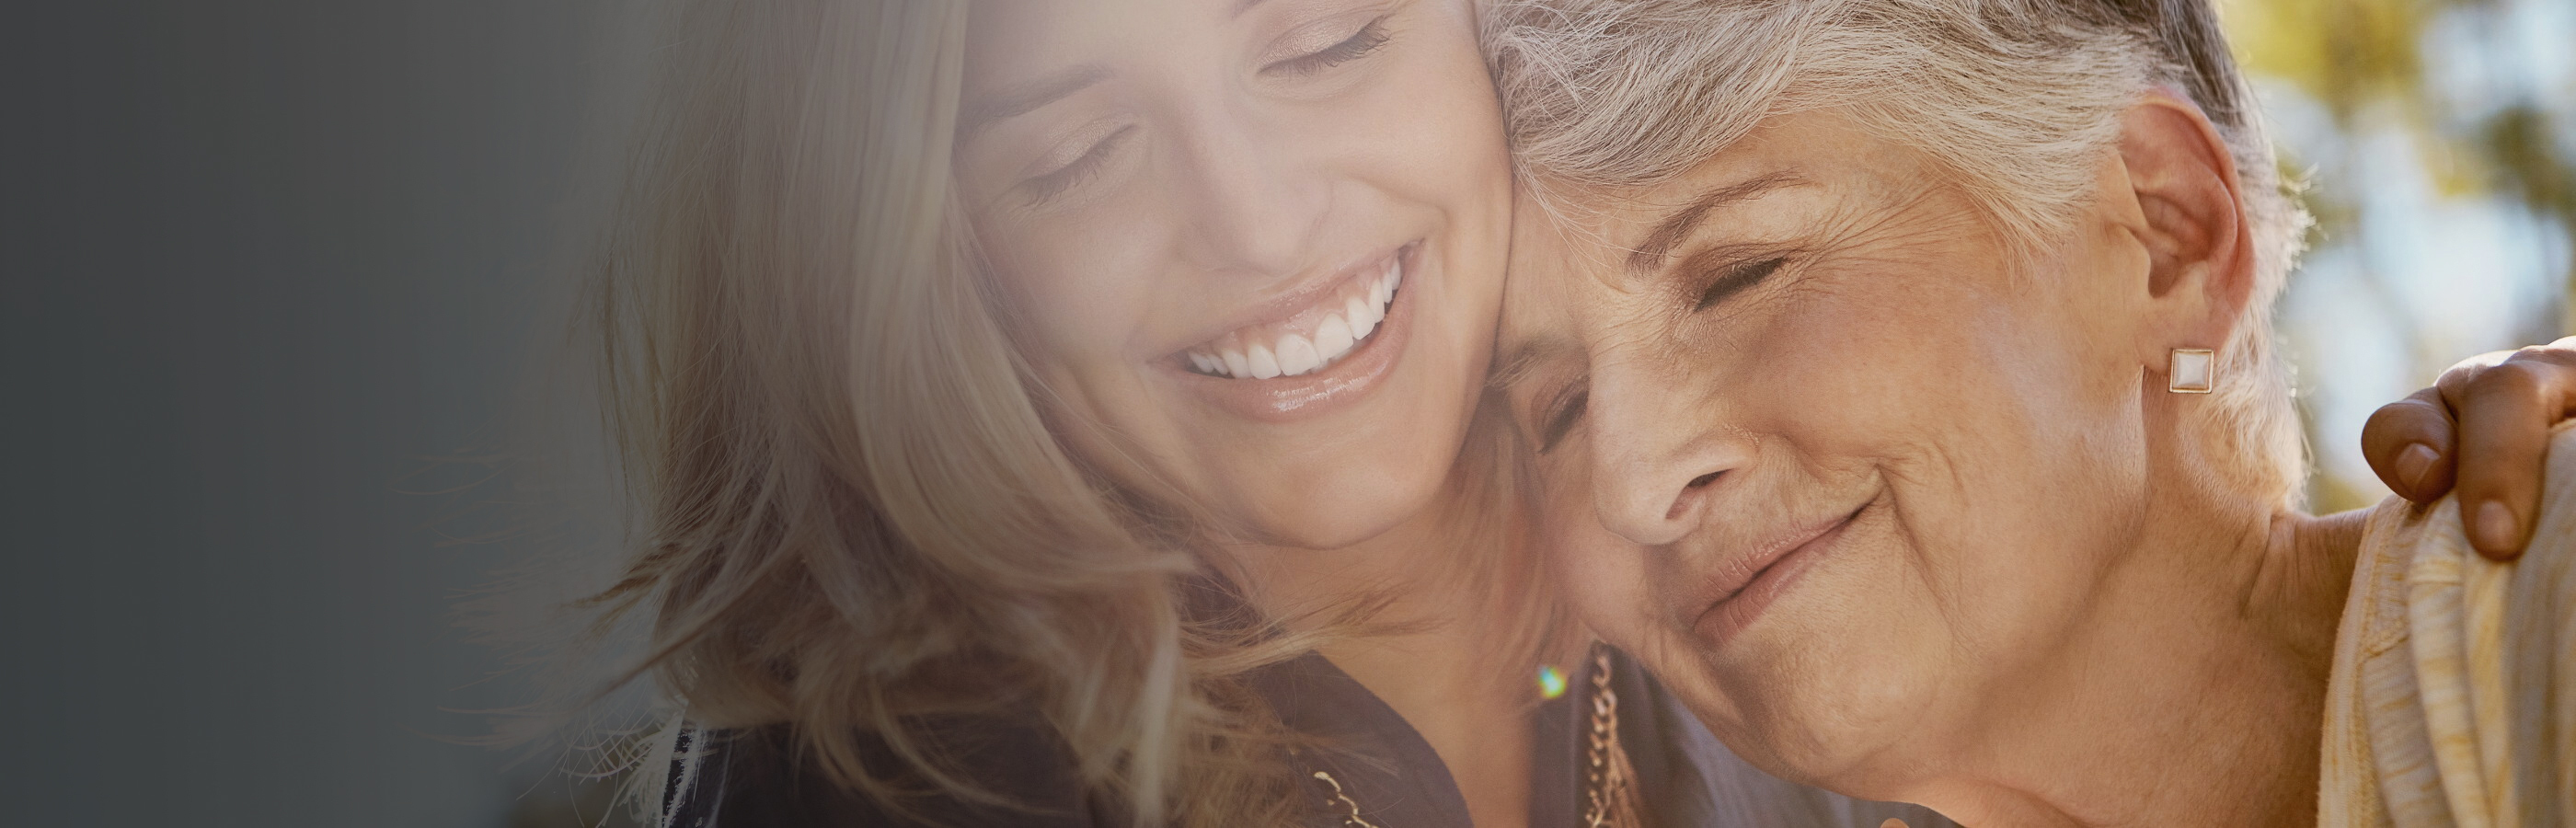 Frau hält ältere Frau im Arm, beide lächeln